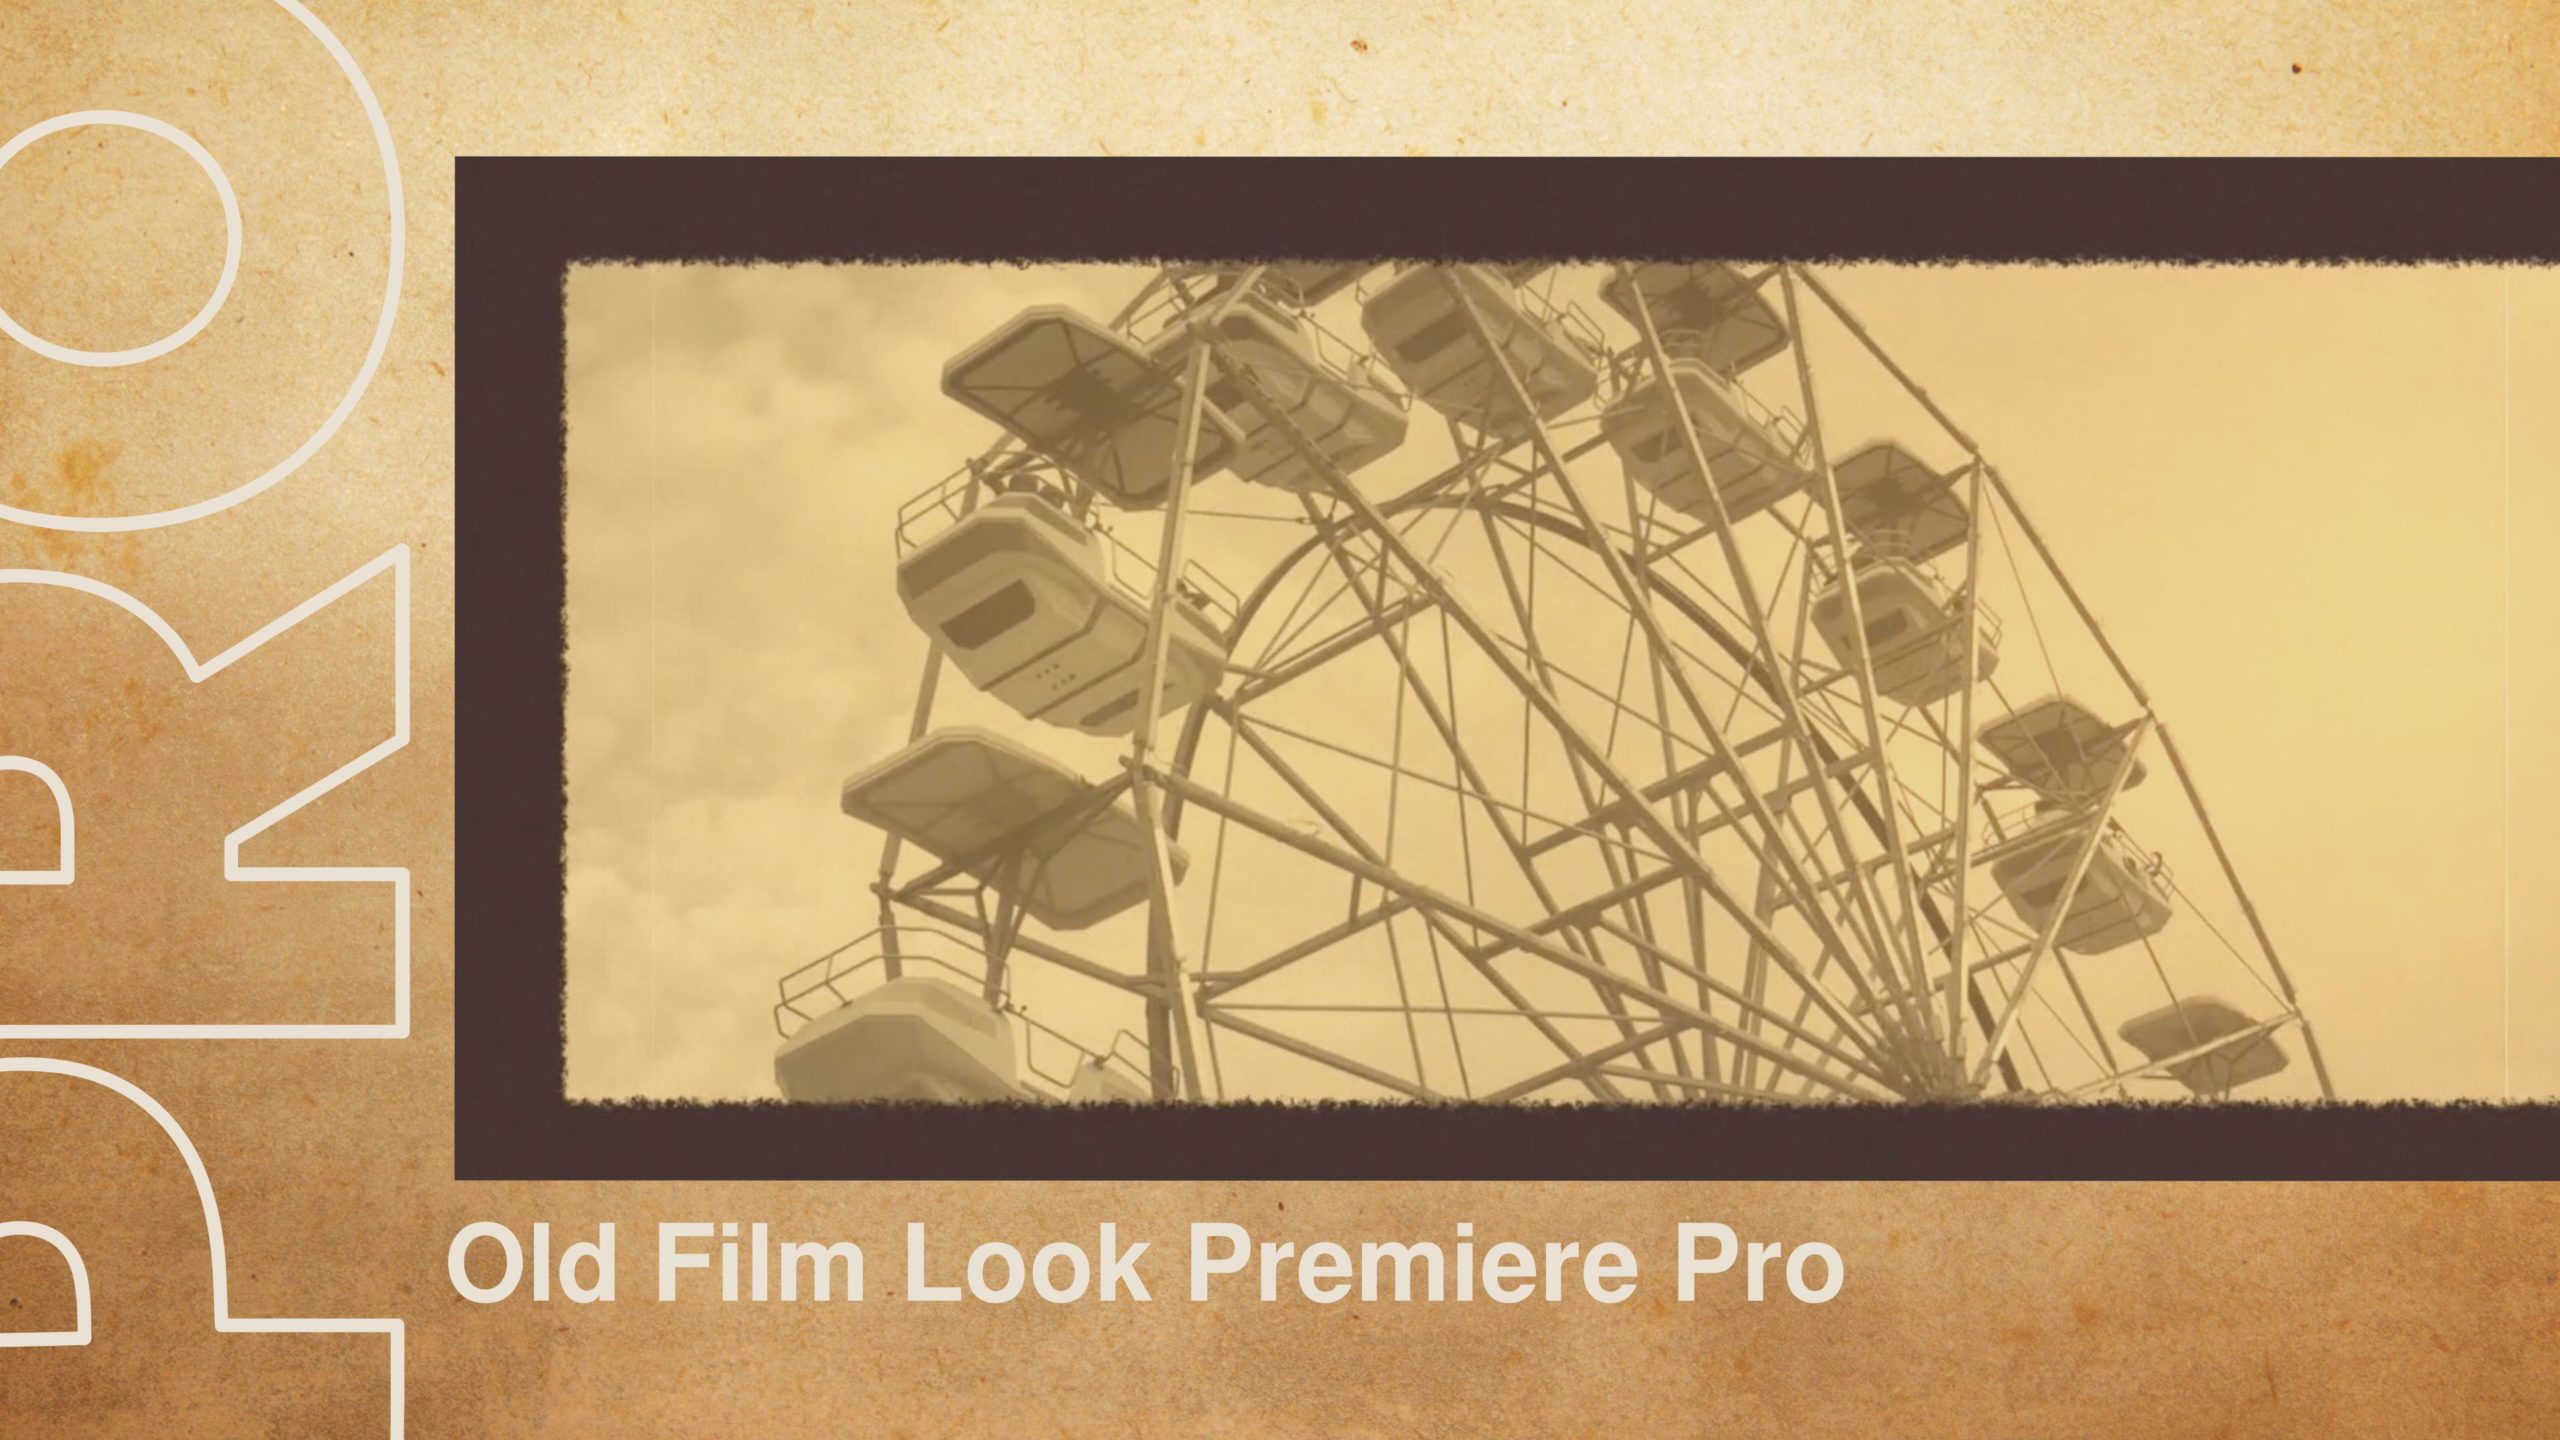 Tạo hiệu ứng phim cũ trong Premiere Pro sẽ làm cho video của bạn trông cổ điển và ấn tượng hơn. Xem hướng dẫn của chúng tôi để tìm hiểu cách tạo hiệu ứng phim cũ trong Premiere Pro và sử dụng mẫu của chúng tôi để tạo video độc đáo và ấn tượng.